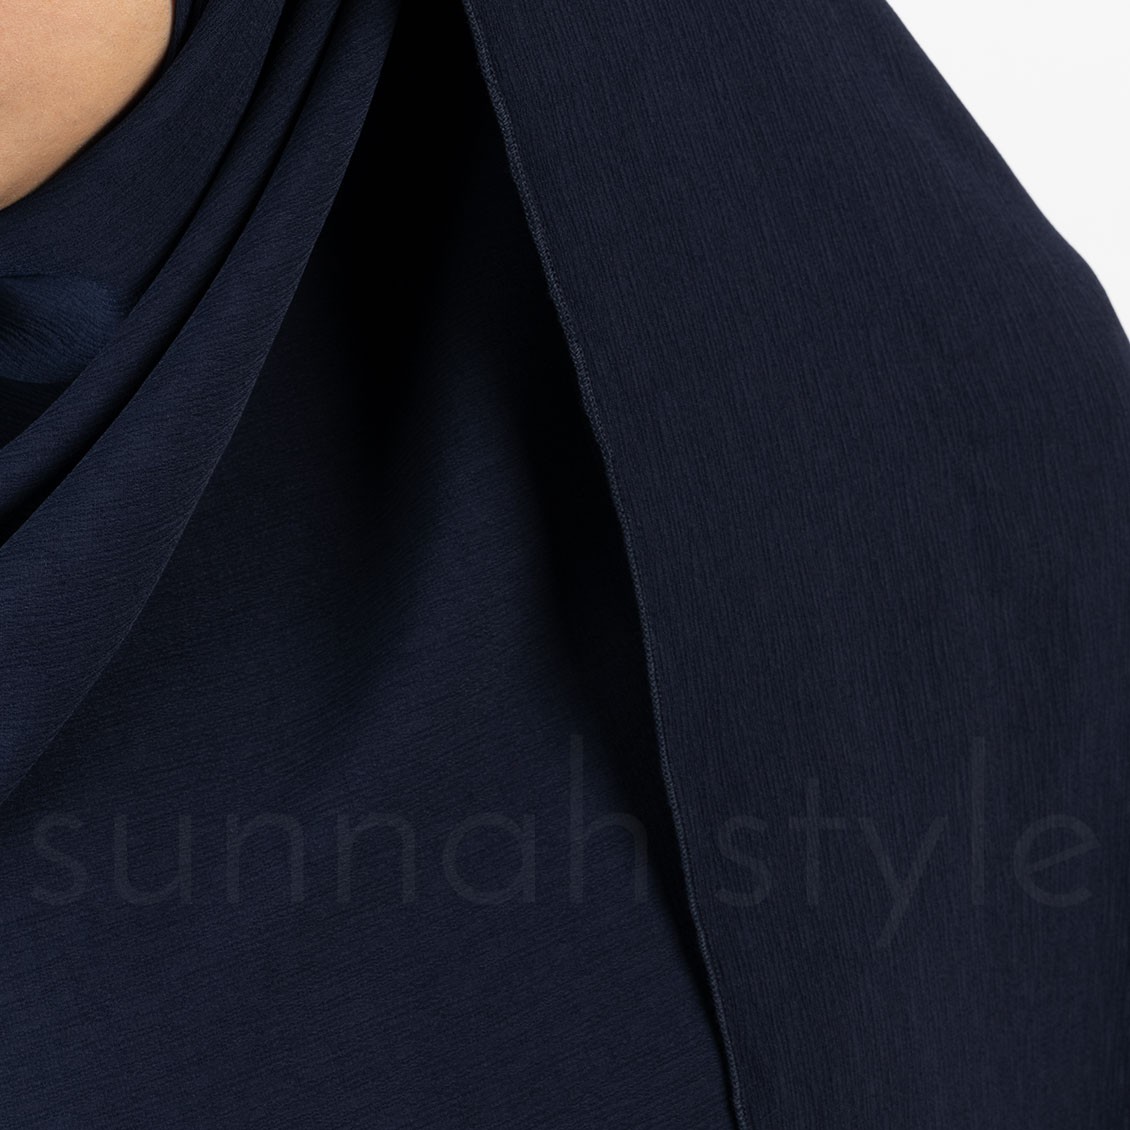 Sunnah Style Brushed Shayla Navy Blue